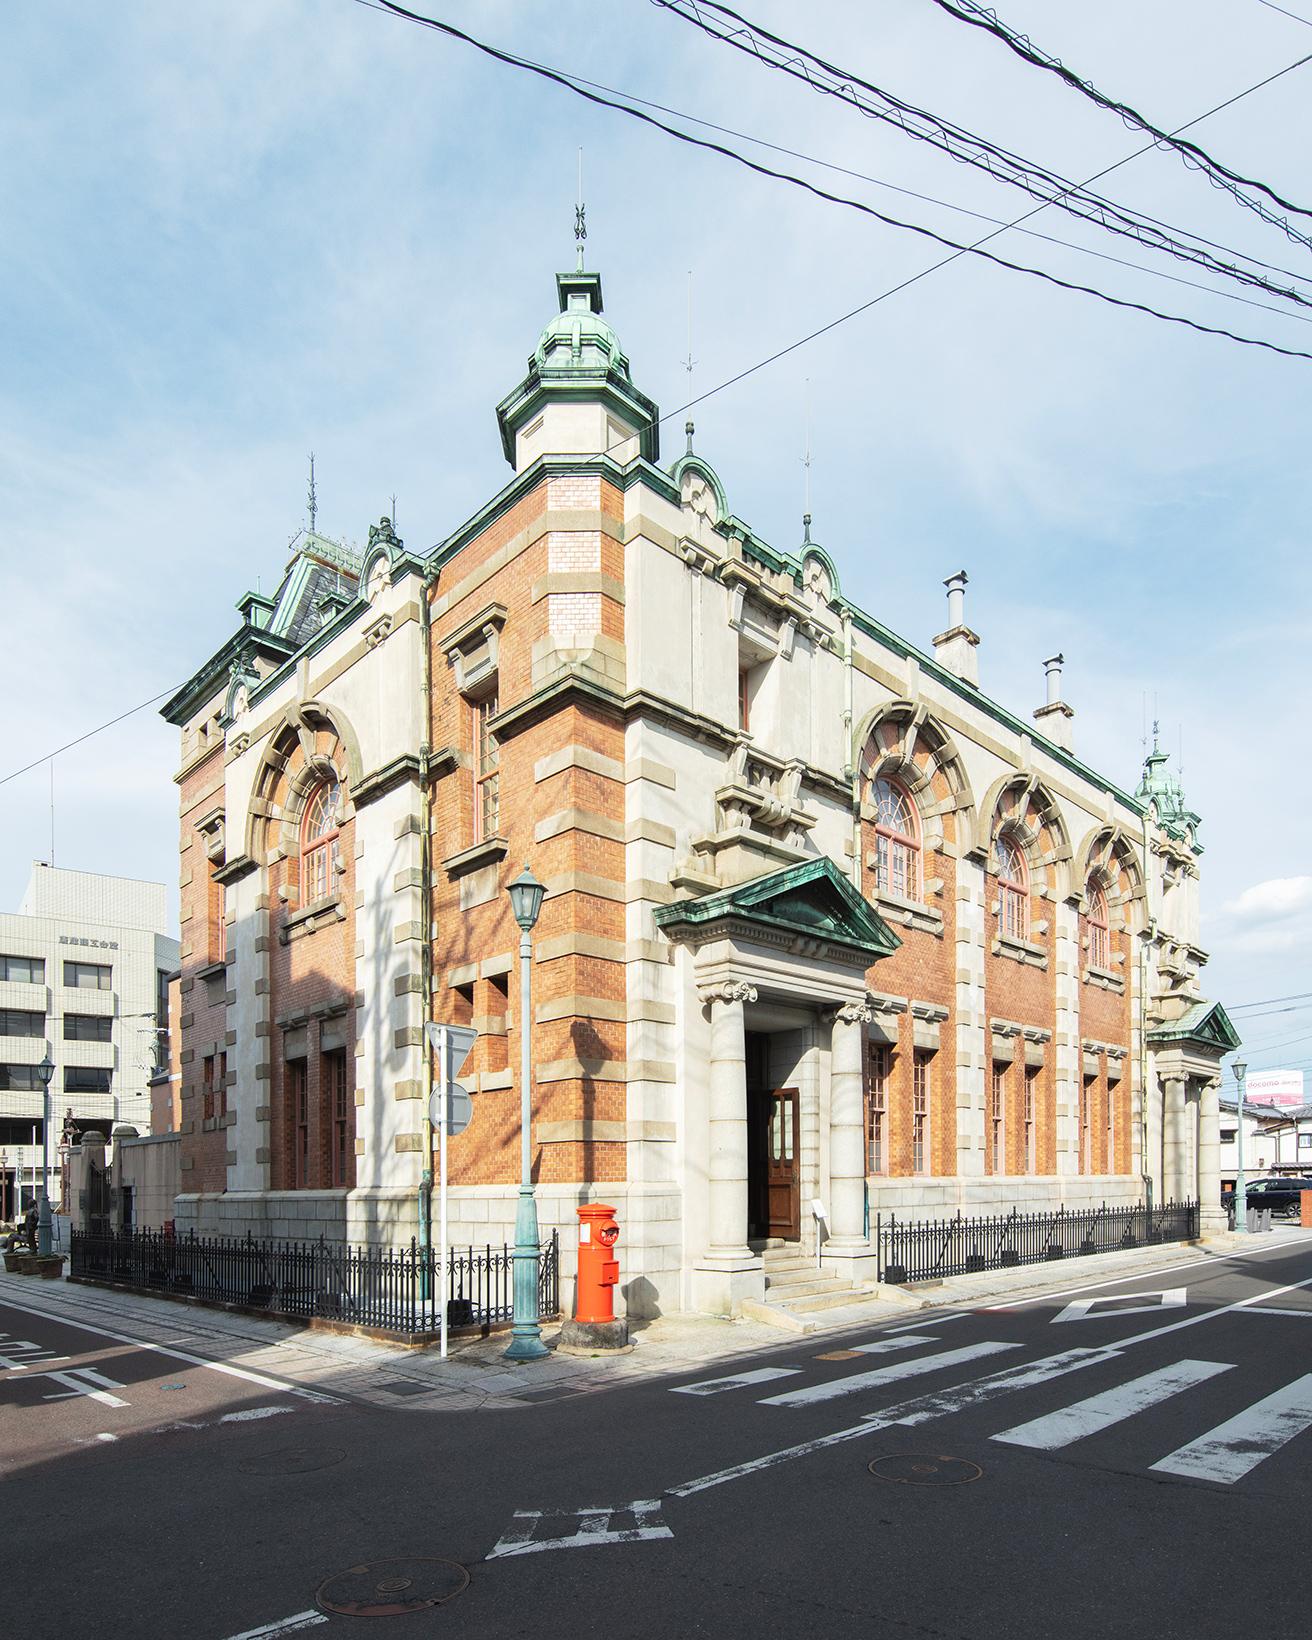 〈旧唐津銀行〉（1912年）。「辰野式」と呼ばれる特徴がファサードに見られる。佐賀県指定重要文化財。